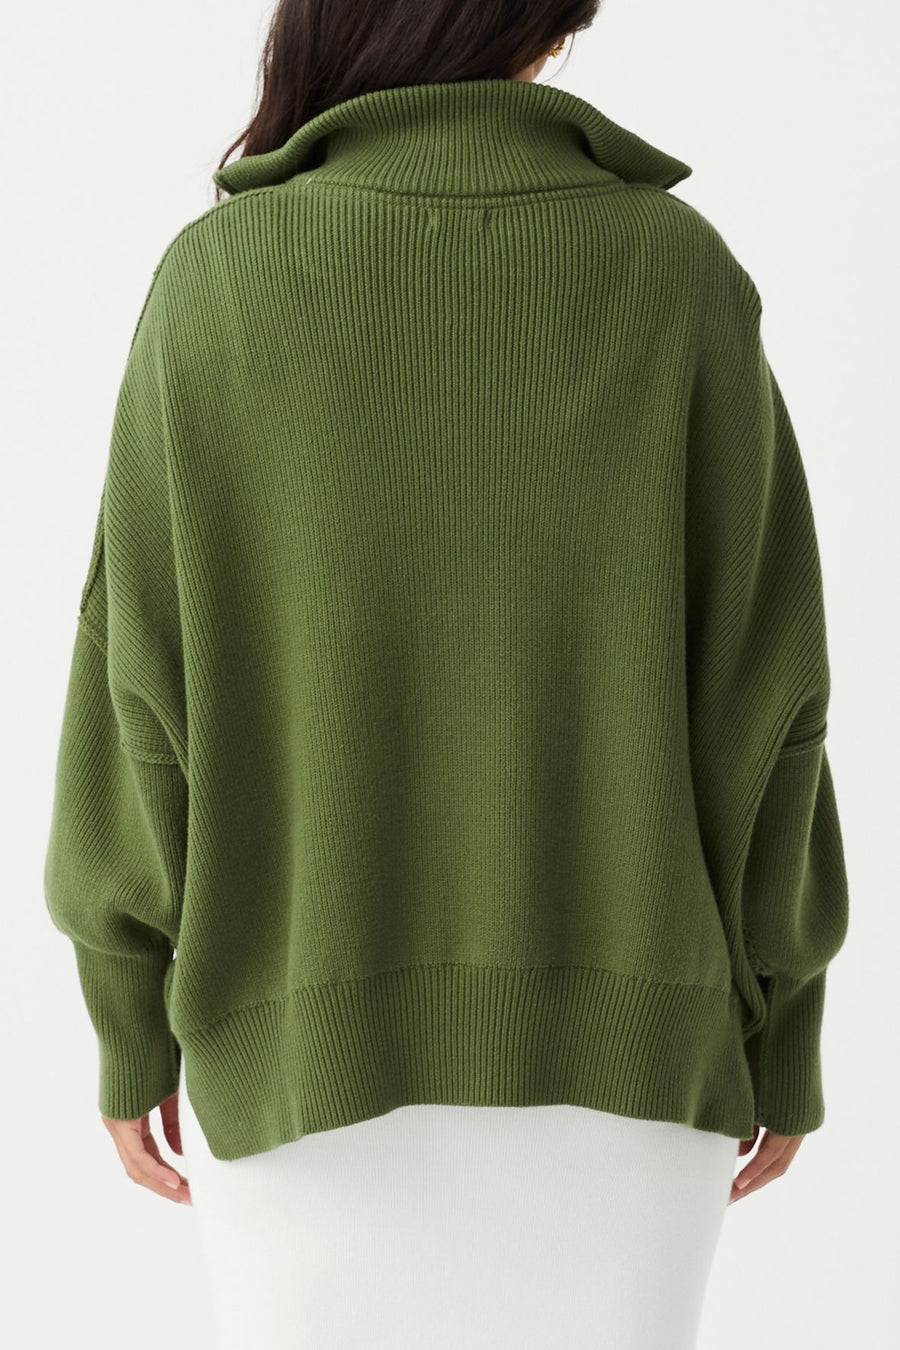 Londen Zip Sweater- Caper